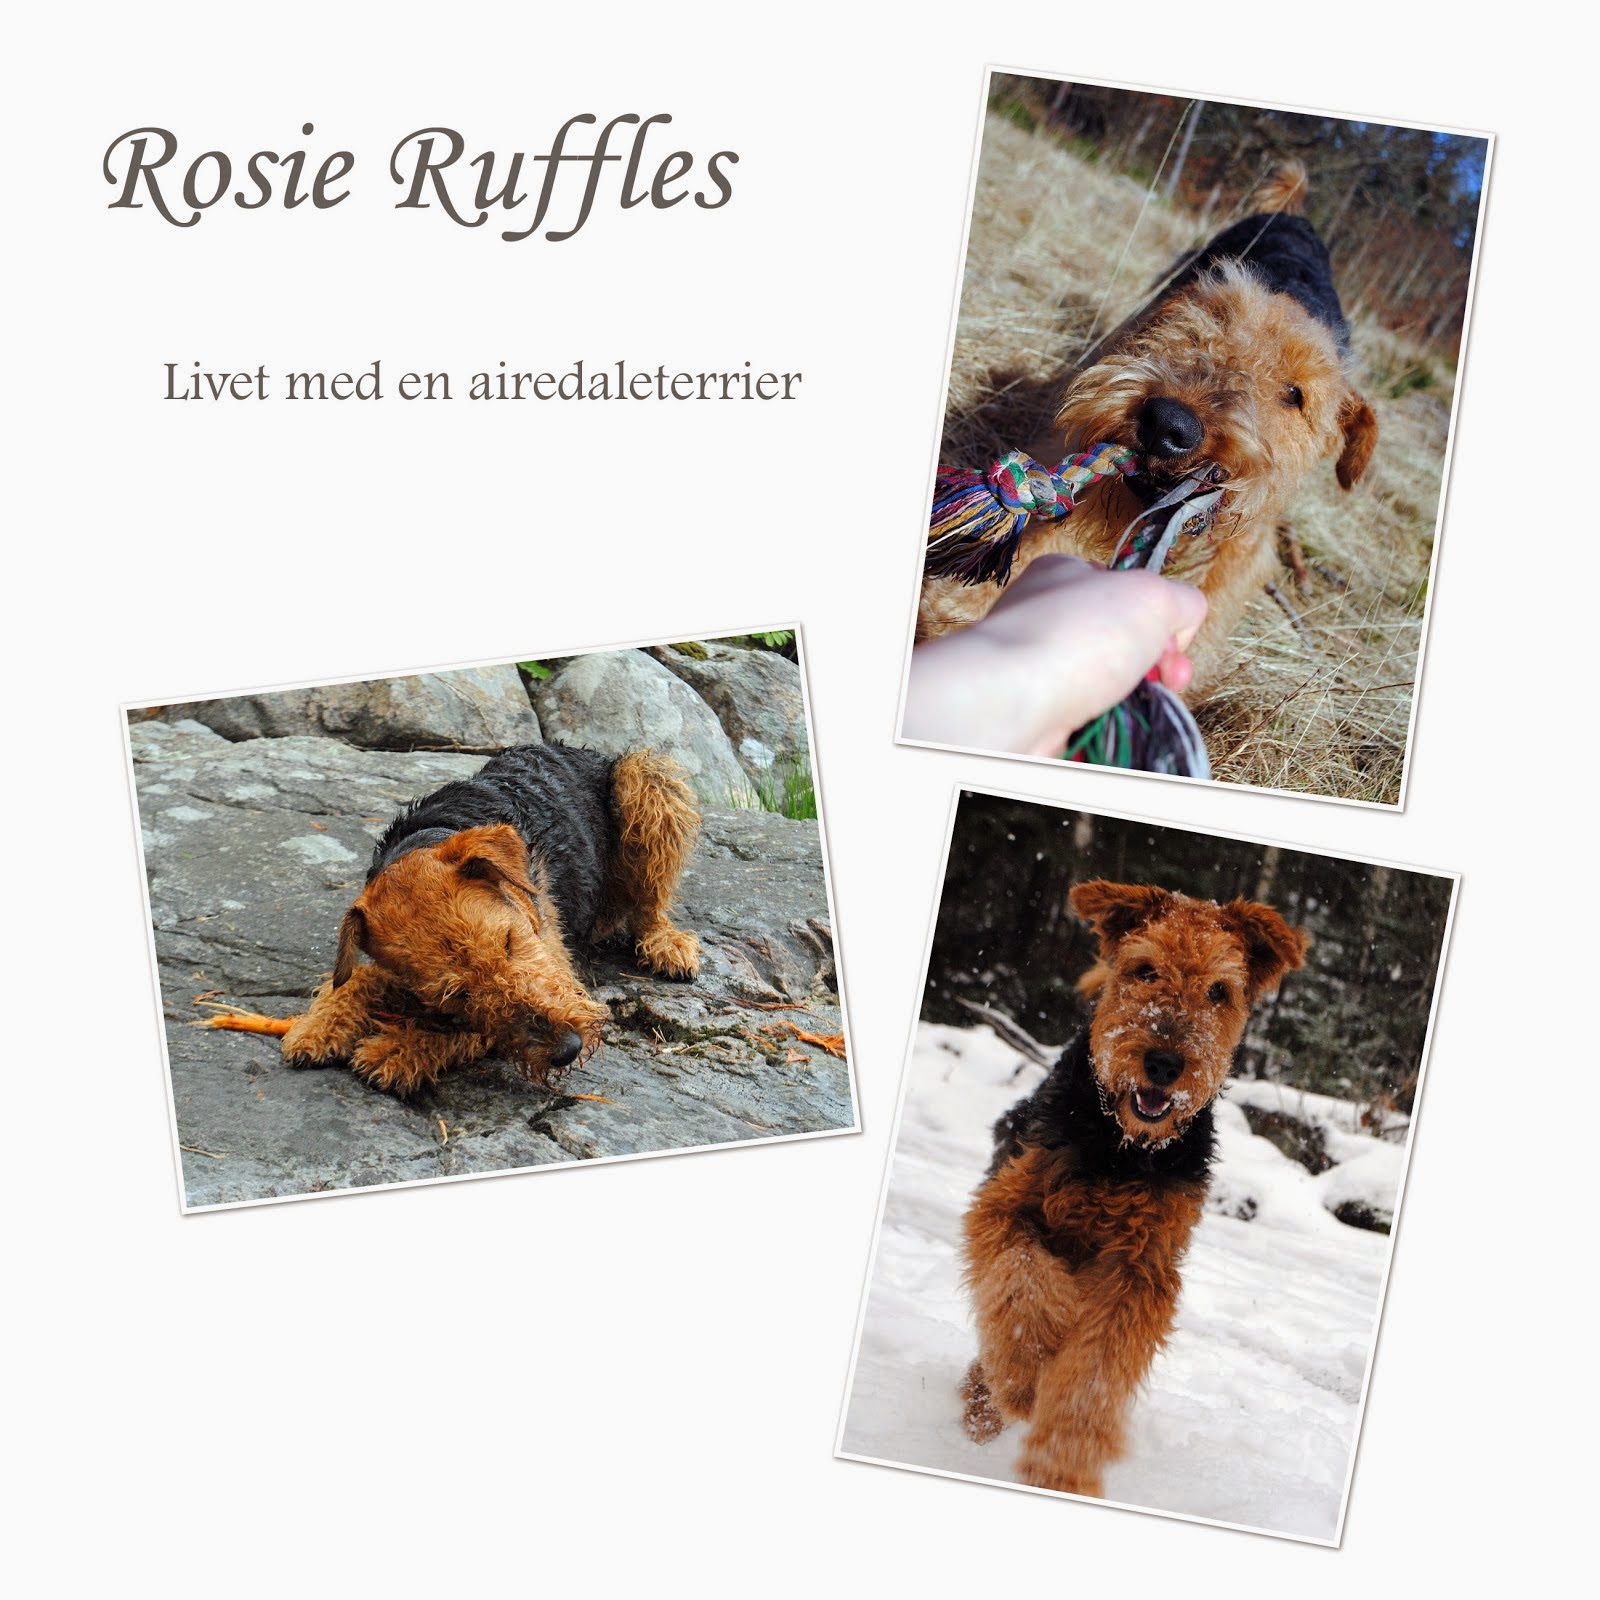 Rosie Ruffles